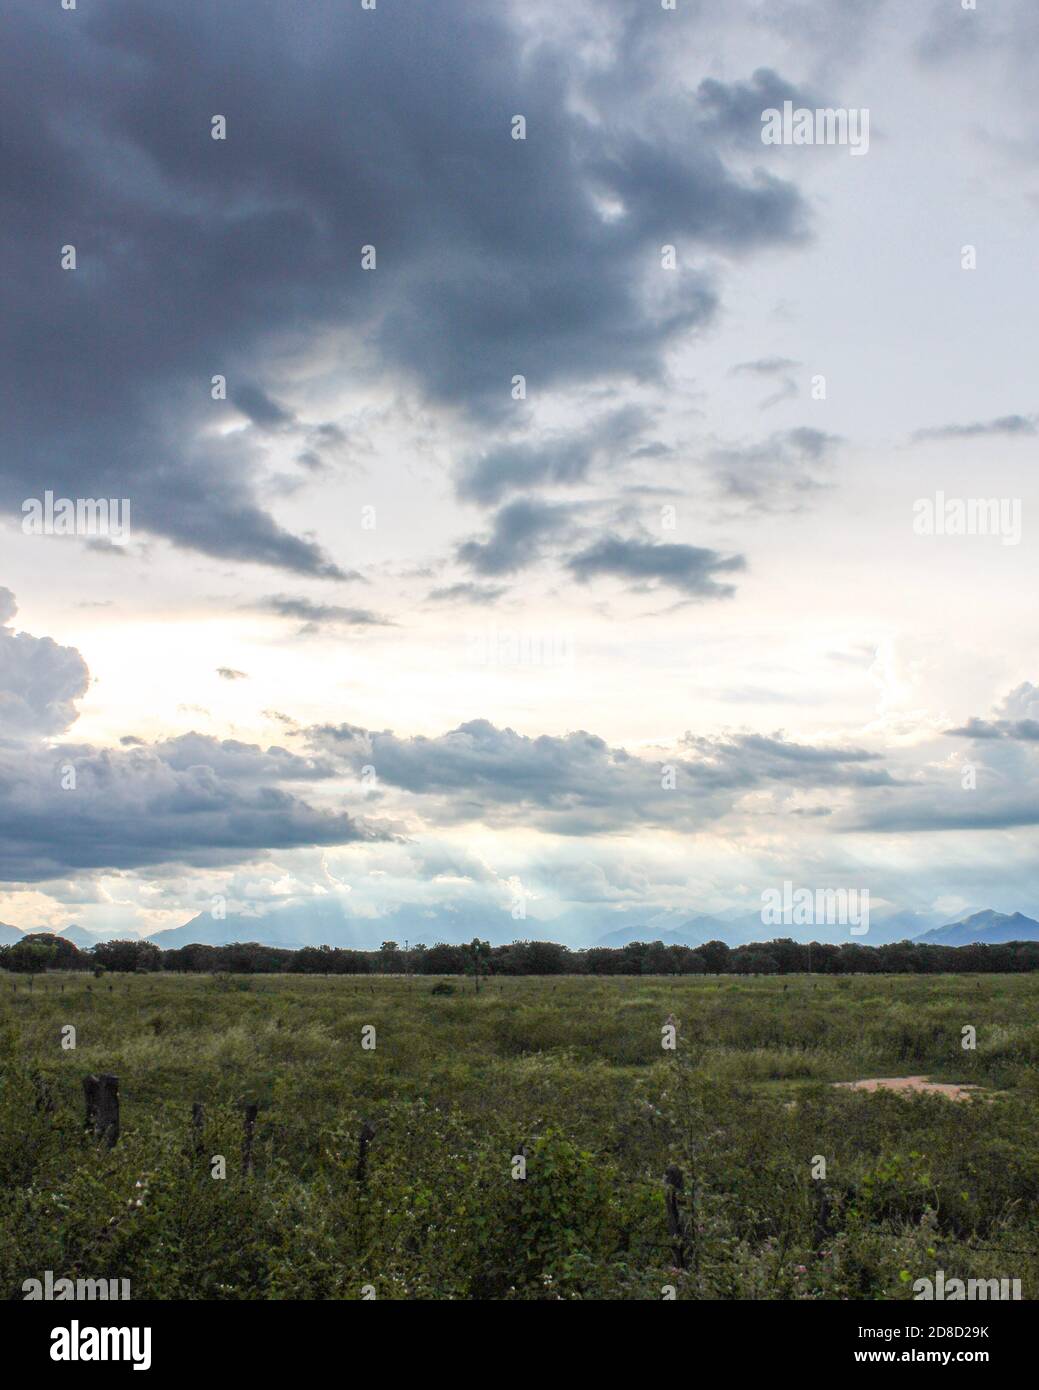 À la poursuite des couchers de soleil à Valledupar juste avant qu'une tempête ne frappe. C'est du côté sud de l'aéroport où il y a beaucoup de champs vides. Banque D'Images